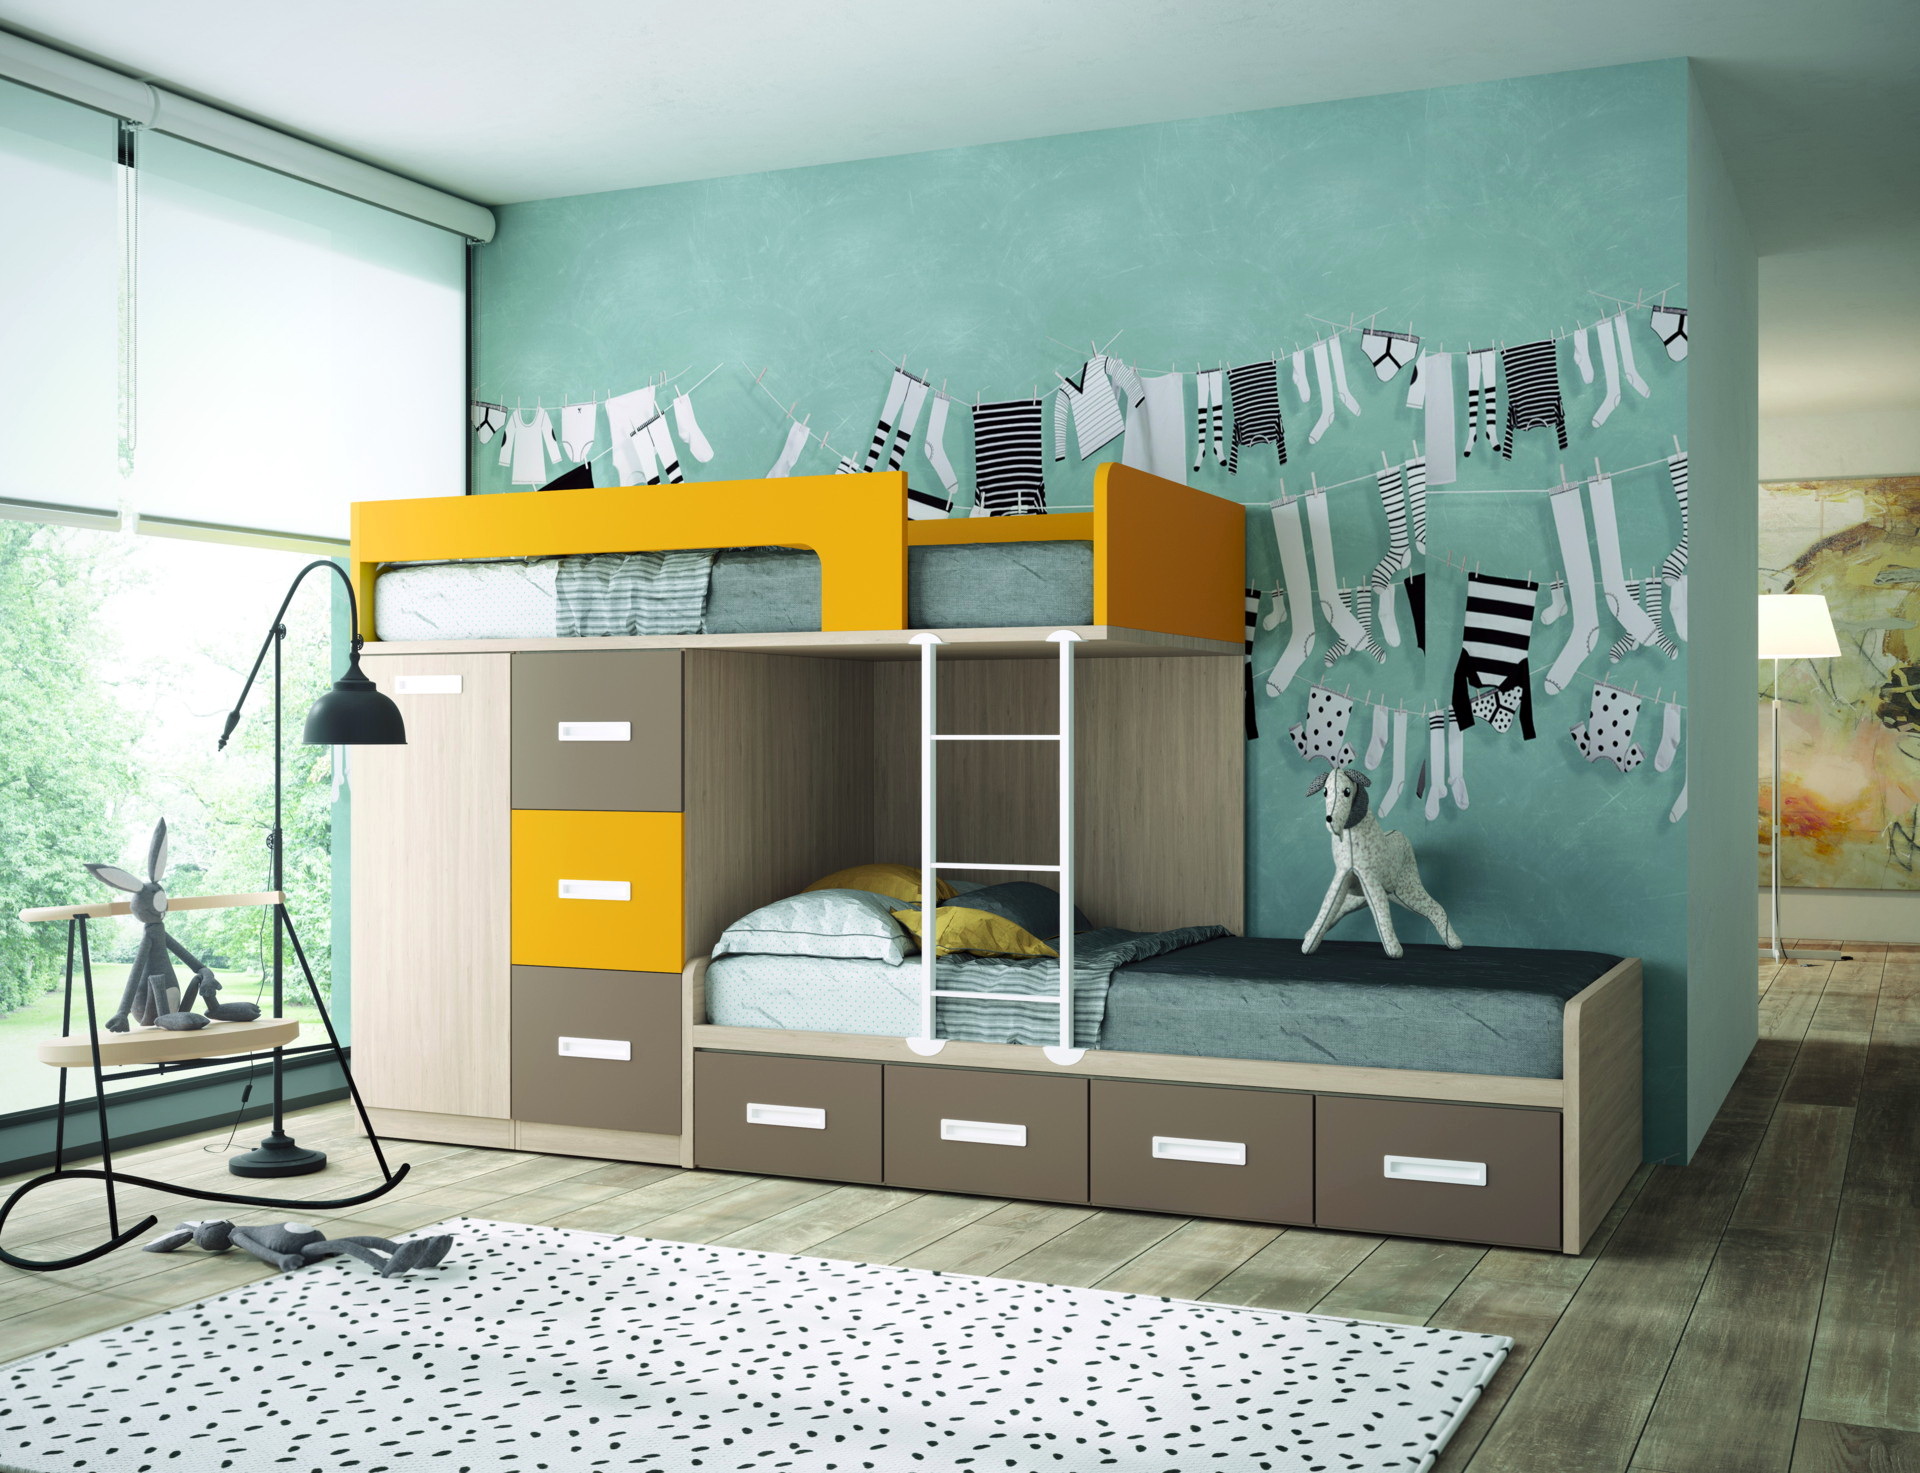 NEW AVANT3 dormitorios infantiles by Yaboni 091 CAMA TREN FRESNO-VISON-AMARILLO de venta en Muebles ANTOÑÁN León